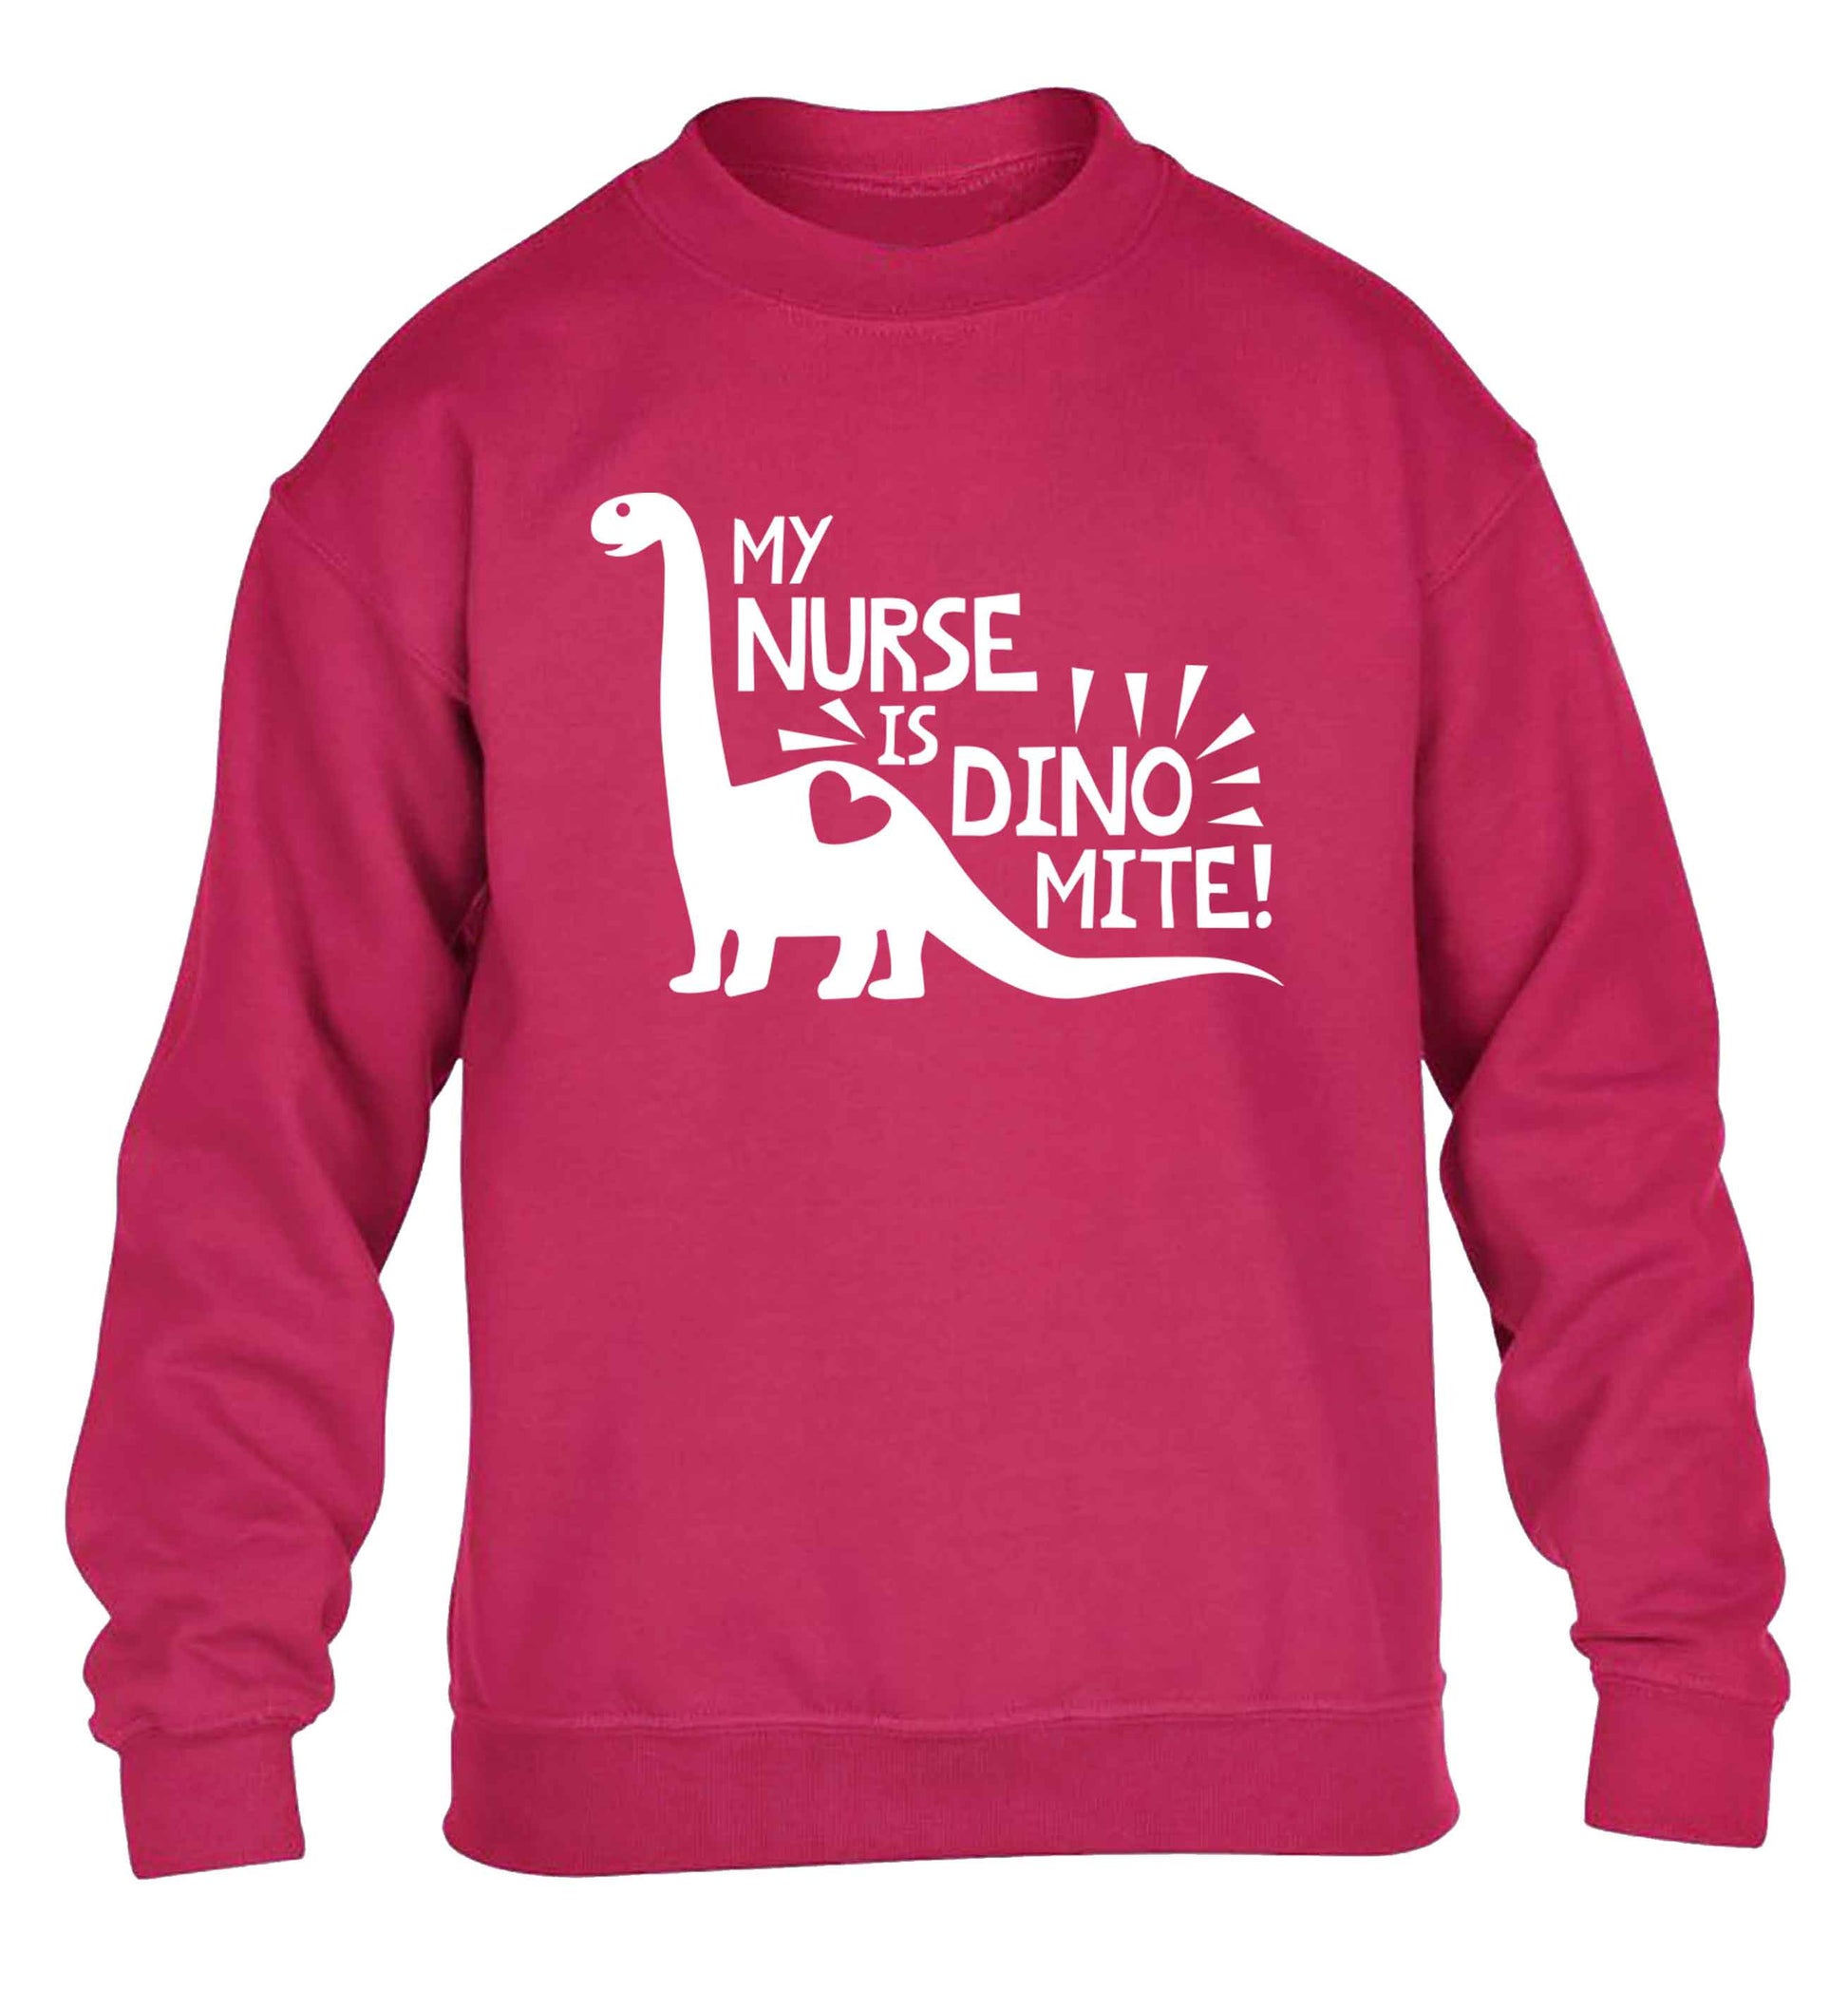 My nurse is dinomite! children's pink sweater 12-13 Years